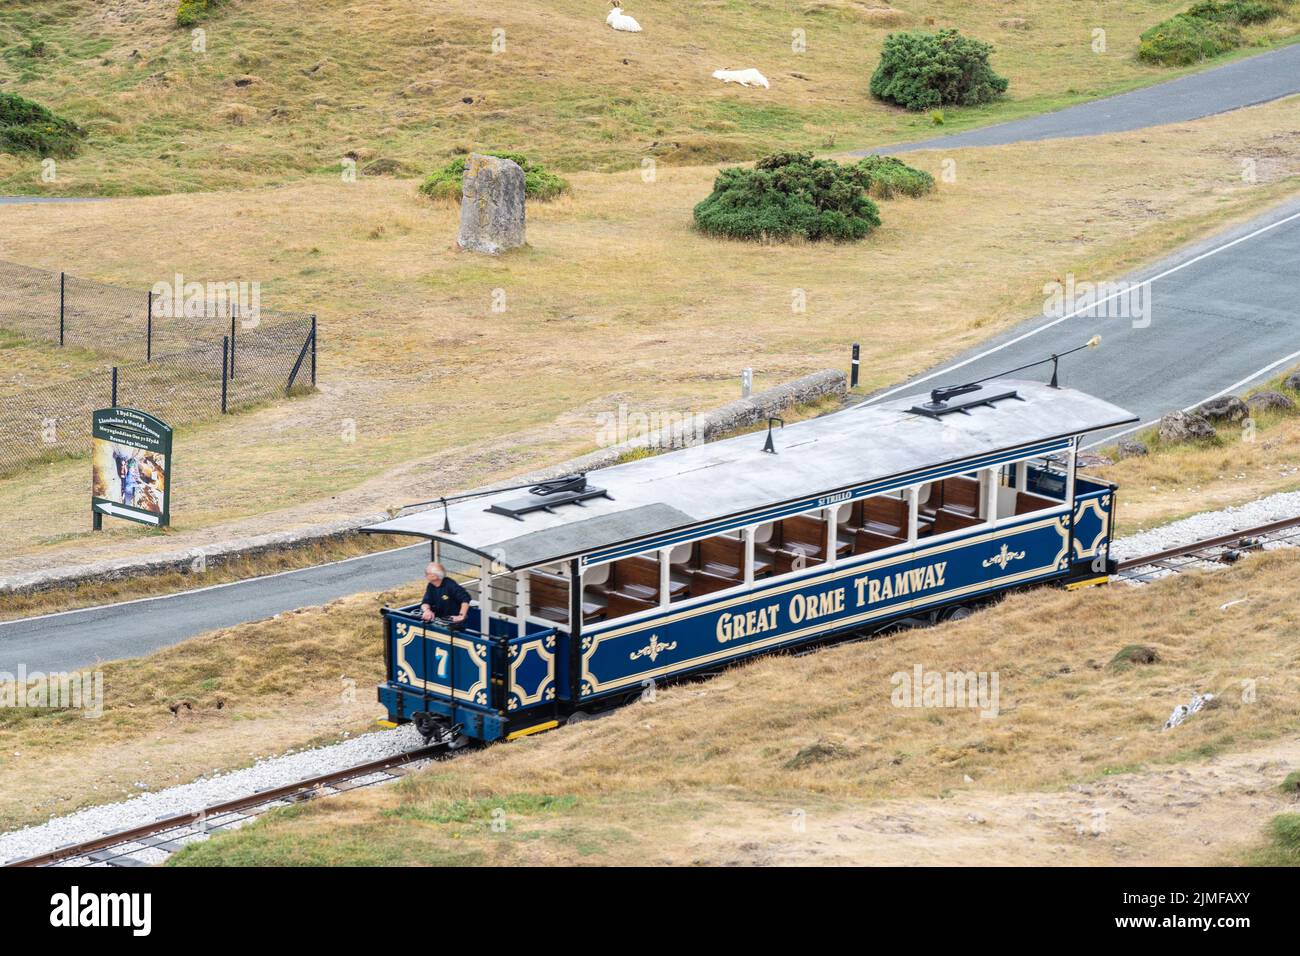 Il tram Great Orme è l'unica funicolare britannica, o tram trainato via cavo che viaggia su strade pubbliche. Regno Unito, Llandudno, Galles del Nord, 28 luglio 2022. Foto Stock